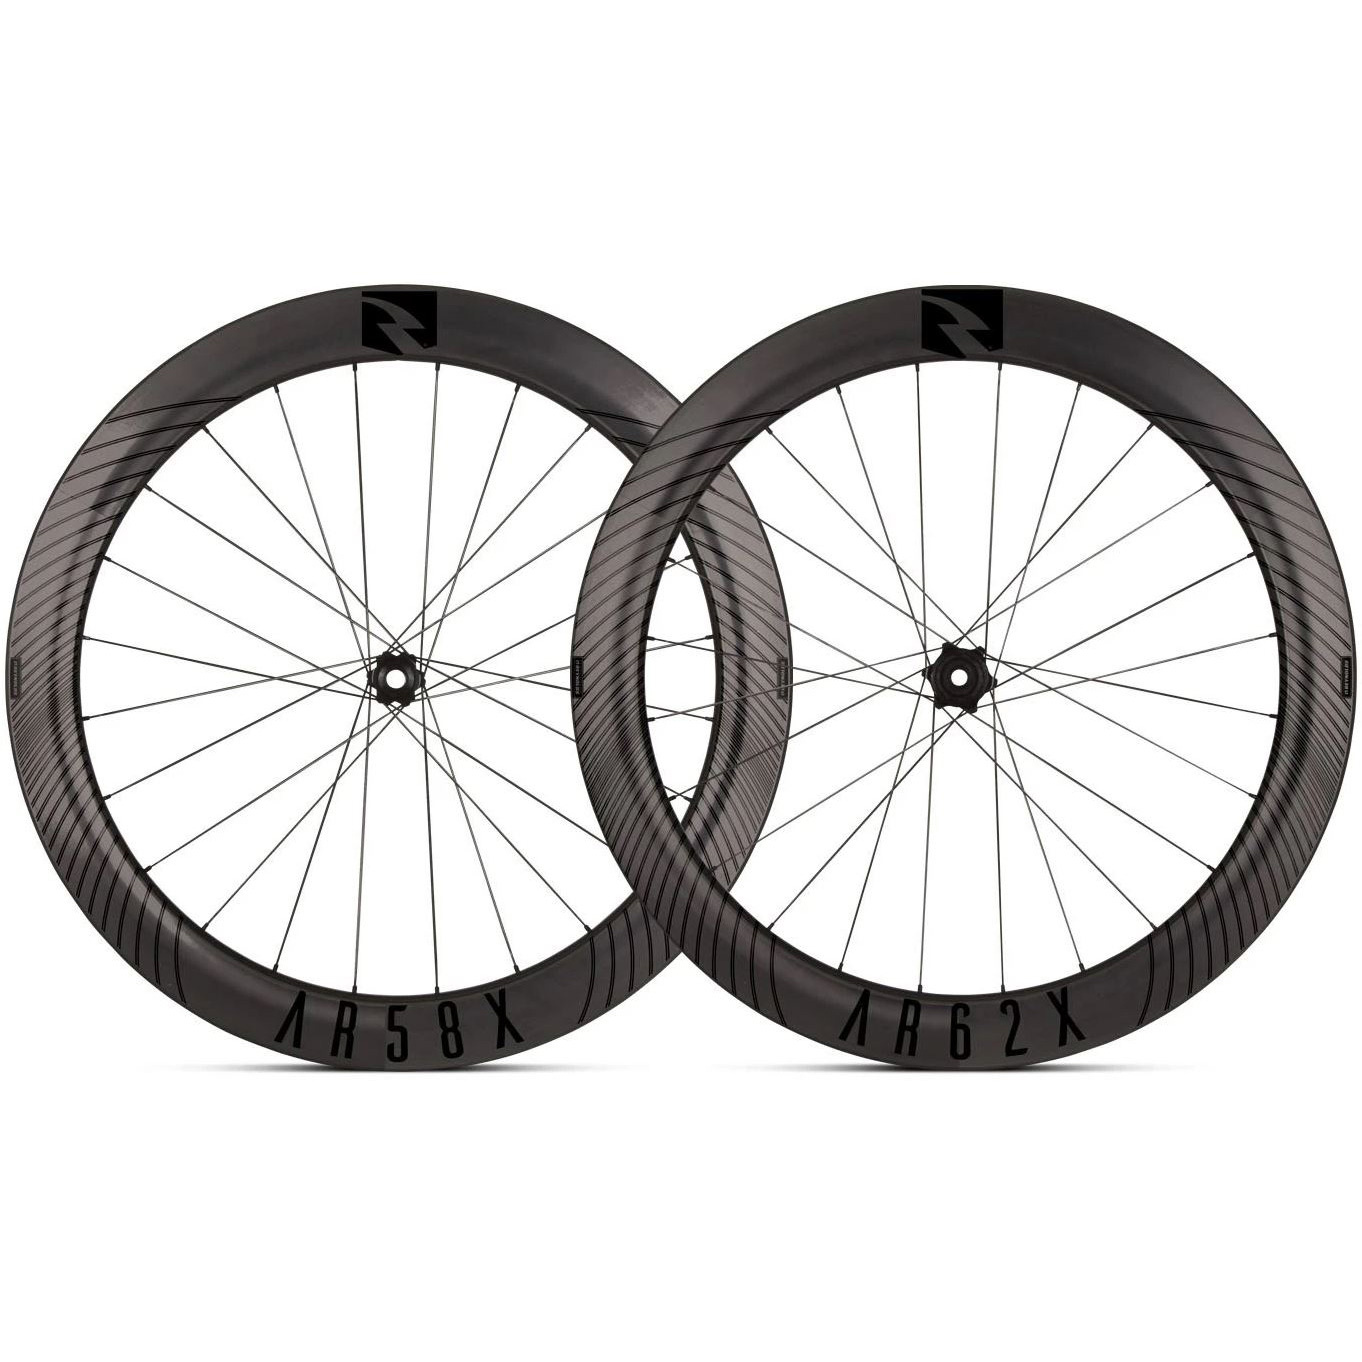 reynolds bike wheels website